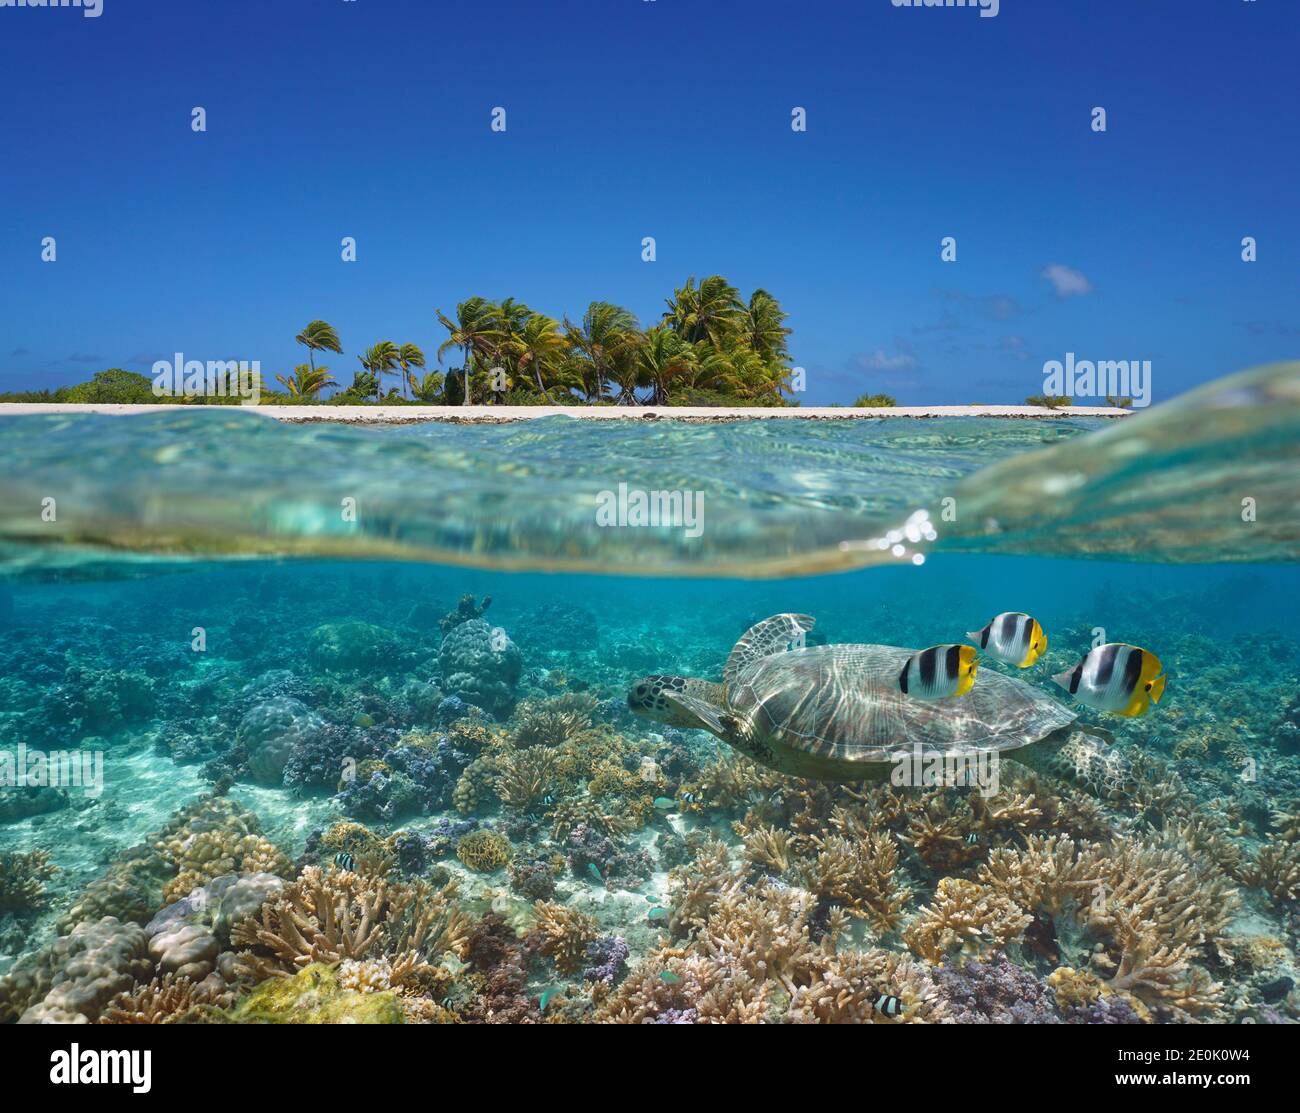 Mare tropicale sopra e sotto l'acqua, costa dell'isola e barriera corallina con tartarughe e pesci sott'acqua, oceano Pacifico, Polinesia francese, Oceania Foto Stock